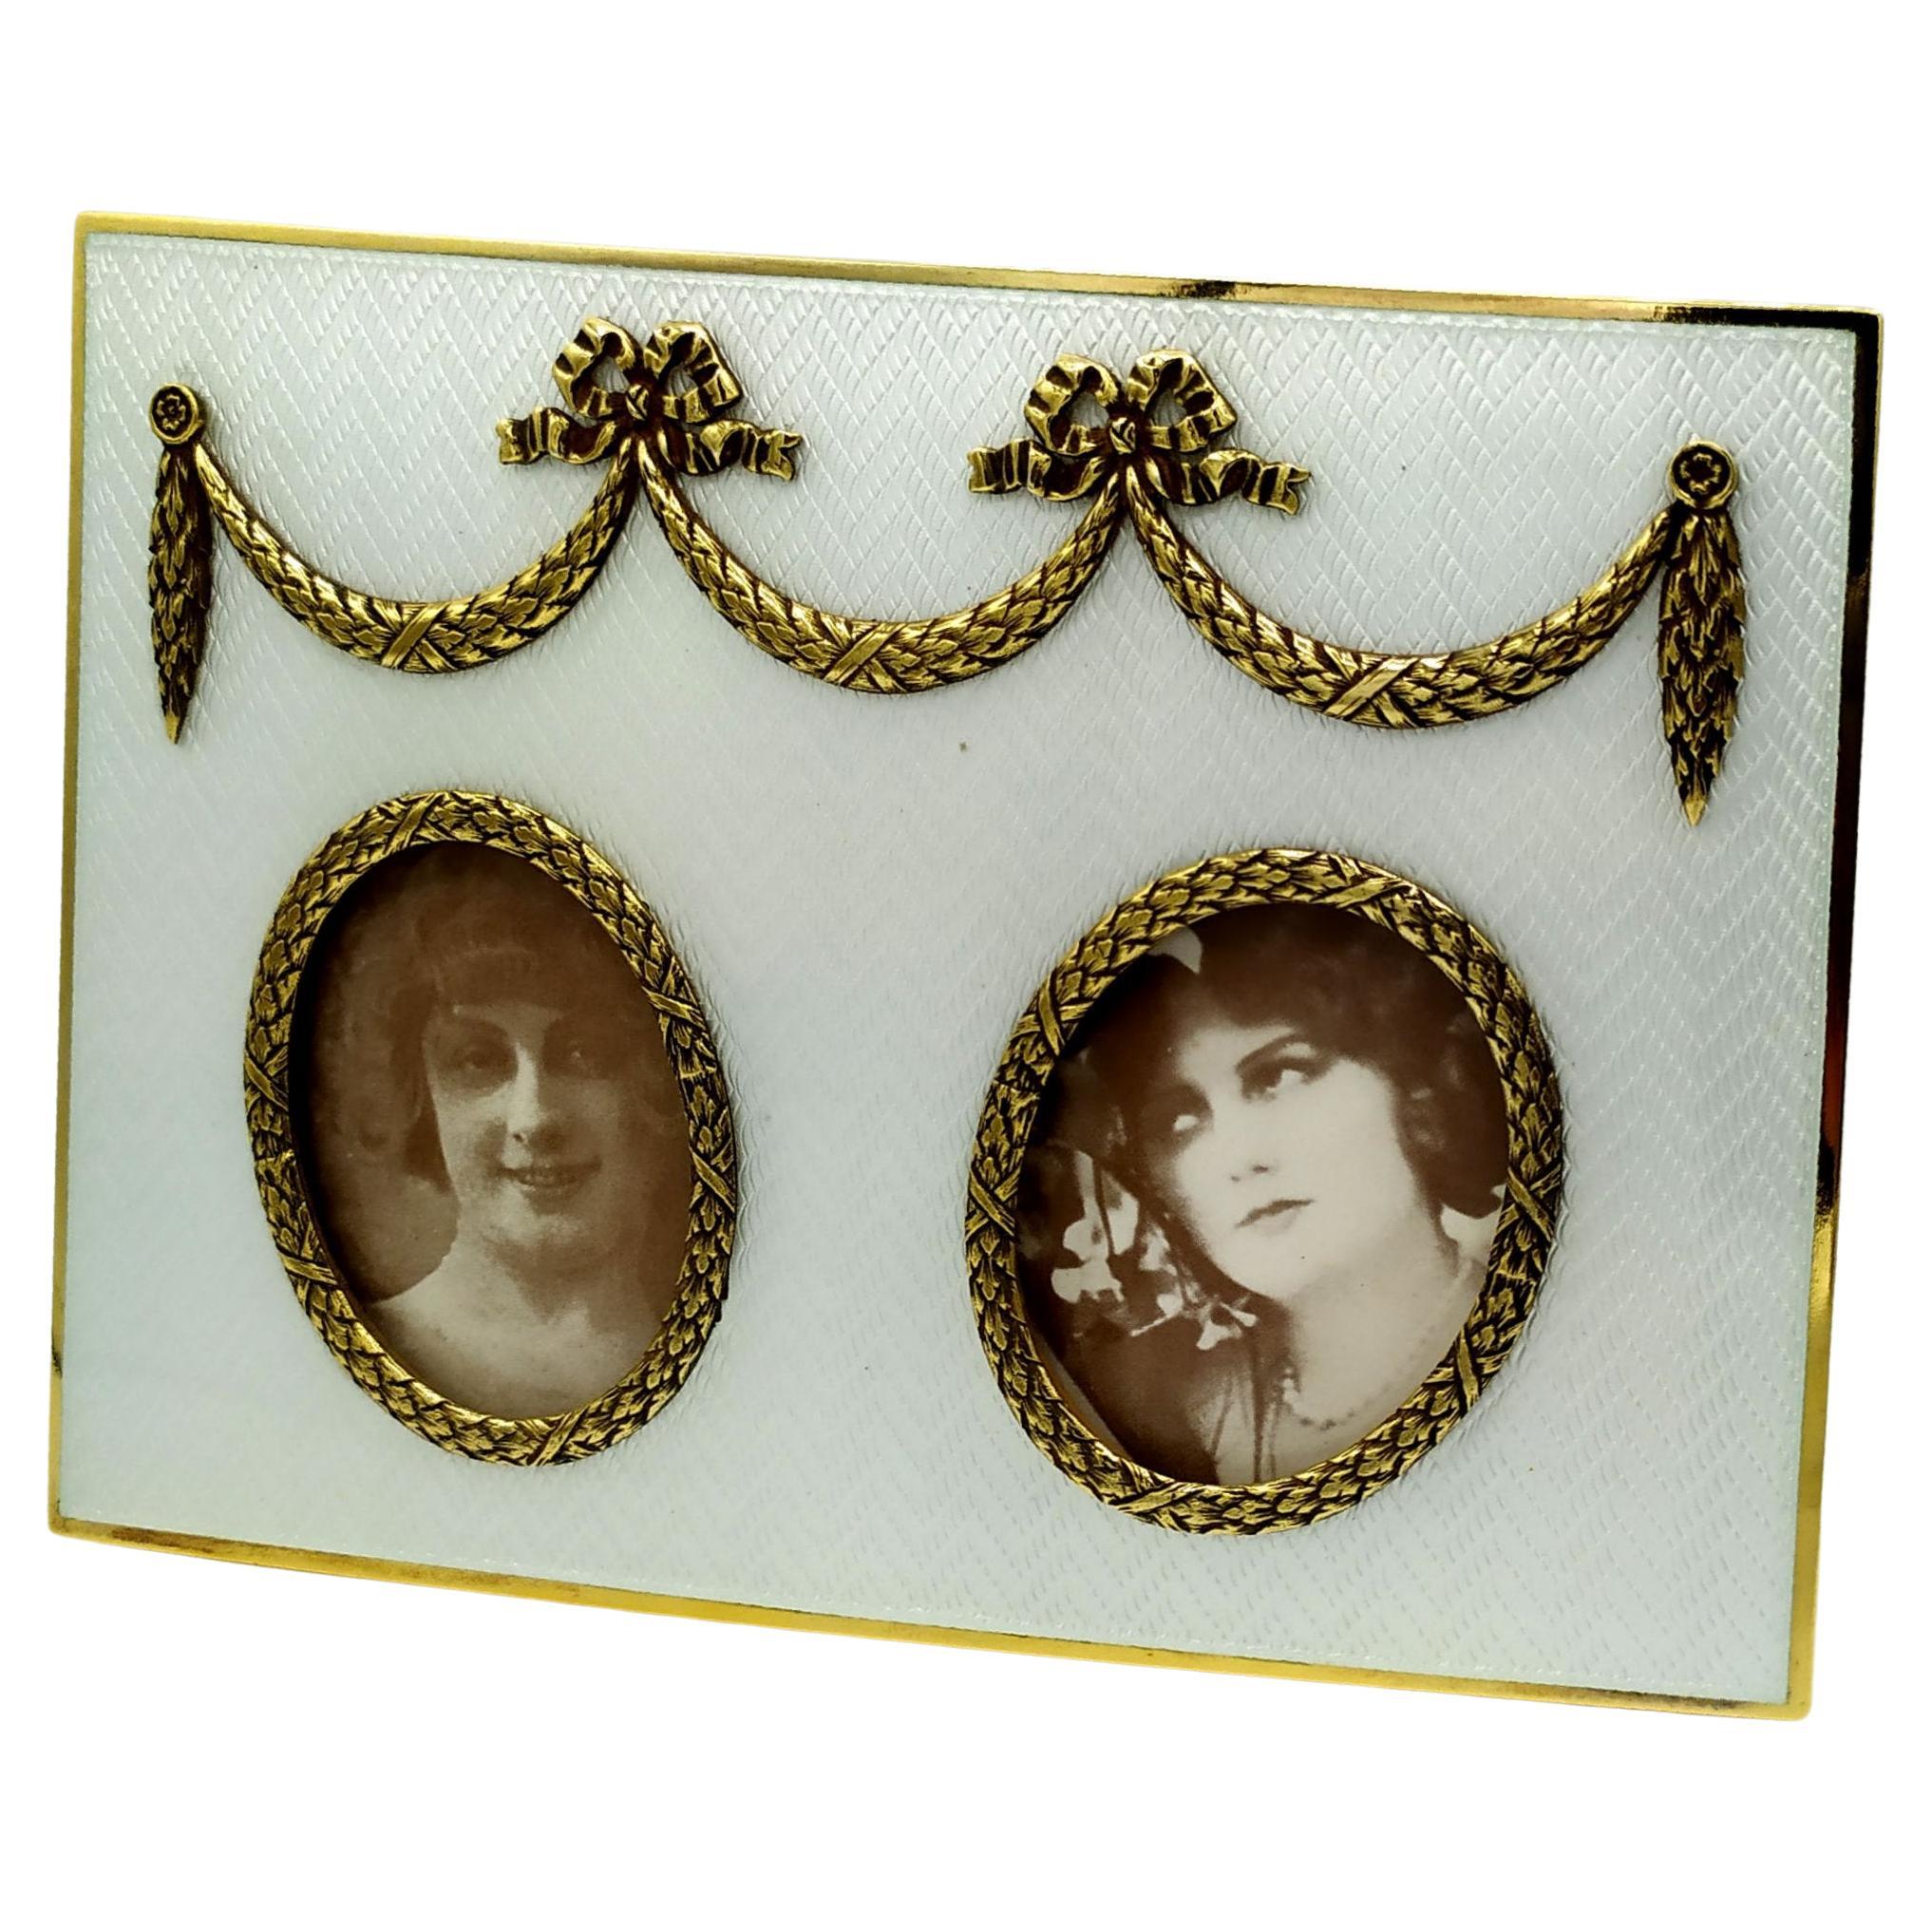 Empire russe - Cadre photo rectangulaire de style Fabergè avec 2 bordures ovales et ornementation.